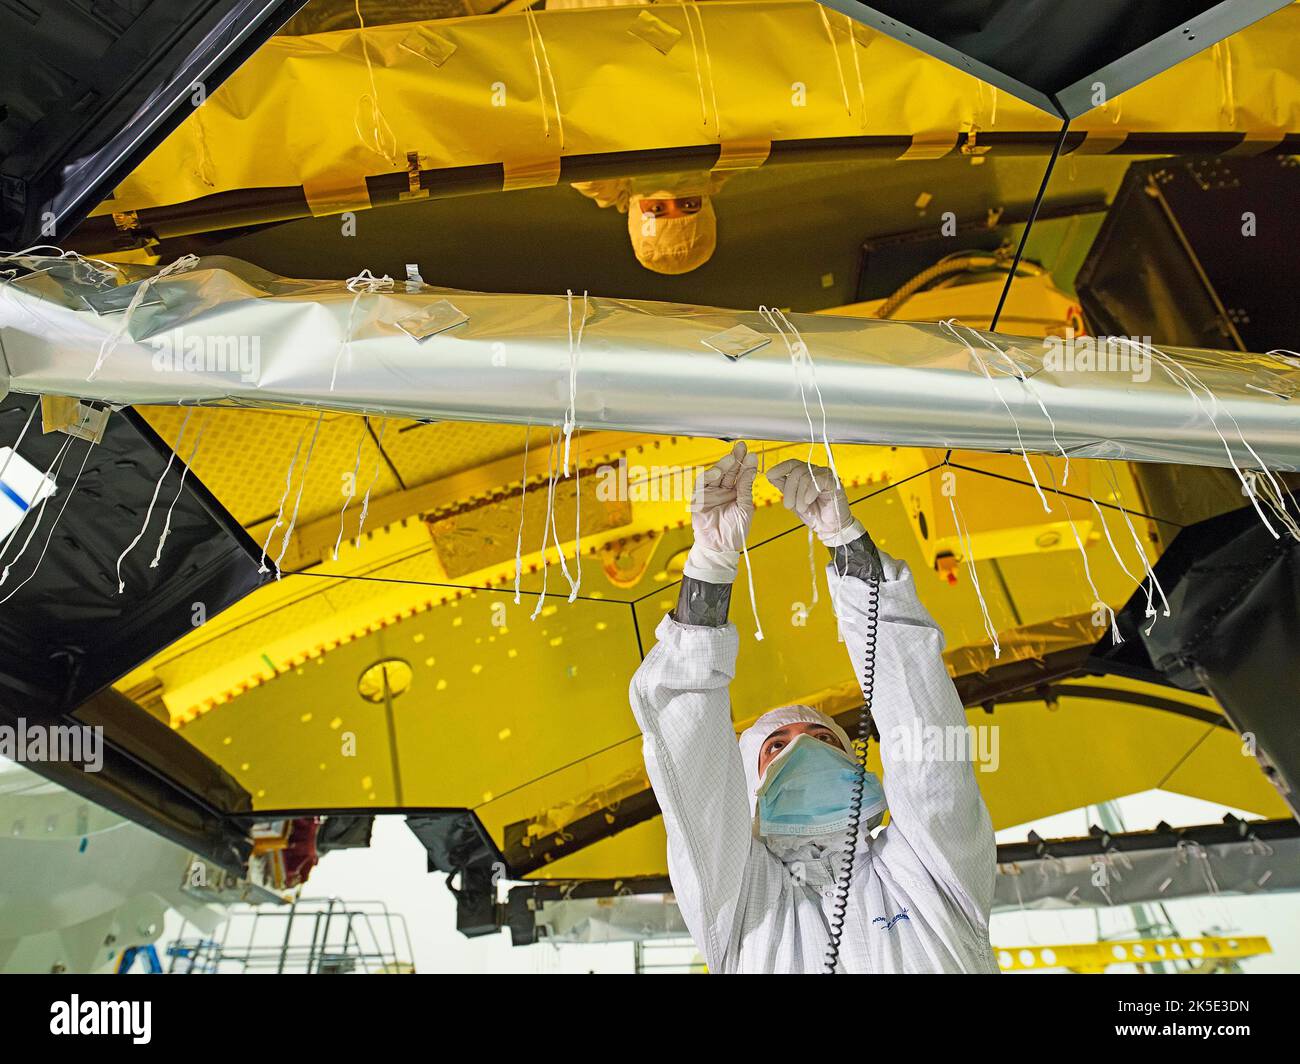 Vorbereitung des James Webb Space Telescope (JWST). Installation von Flug-Wärmedecken auf der Struktur, die den Sekundärspiegel des JWST in einem Reinraum in Northrop Grumman, Redondo Beach, Kalifornien, USA, unterstützt. Schnüren, die Decken an den Streben befestigen. Da die Decken gebunden (und auch genäht) sind, gehören die Mitglieder dieses Teams zu den einzigartigsten, die über Hintergründe verfügen, die Schneiderei und Kostümherstellung umfasst haben, bevor sie in der Luft- und Raumfahrtindustrie arbeiten. Eine optimierte Version eines NASA-Bildes vom erfahrenen Hauptfotografen Chris Gunn. Quelle: NASA/Chris Gunn. Nur für redaktionelle Zwecke Stockfoto